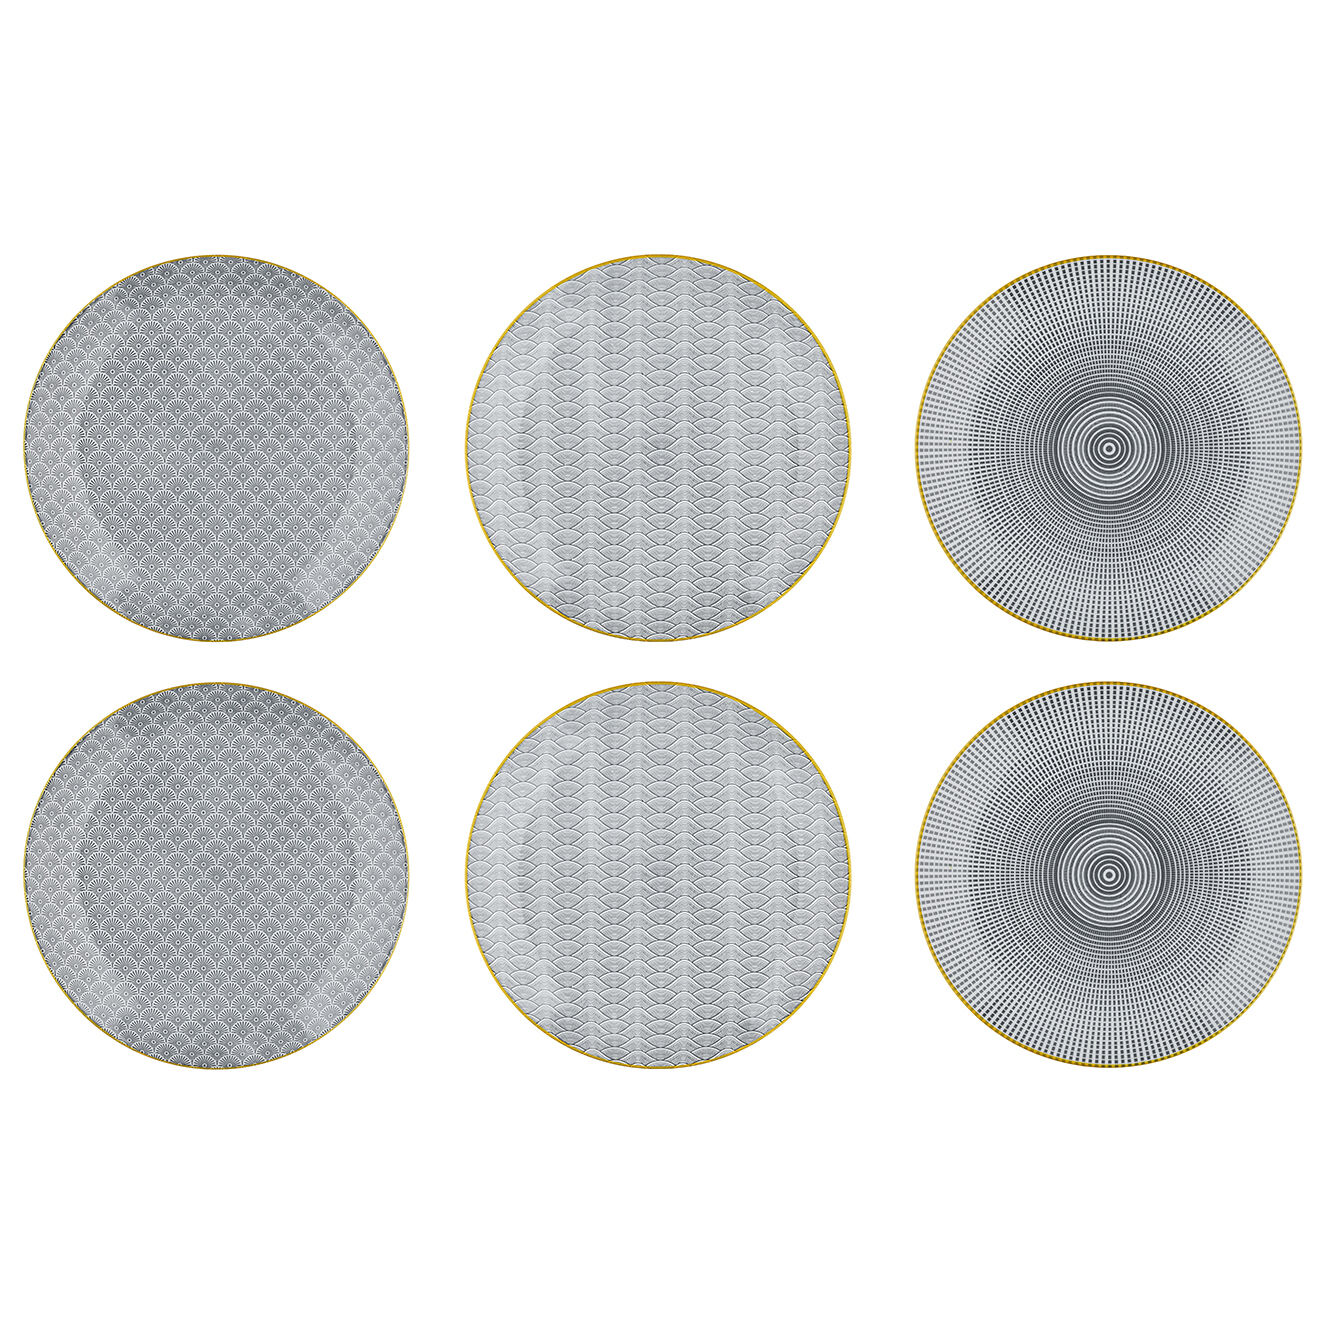 6 Assiettes plates Eclipse gris anthracite - D.26 cm